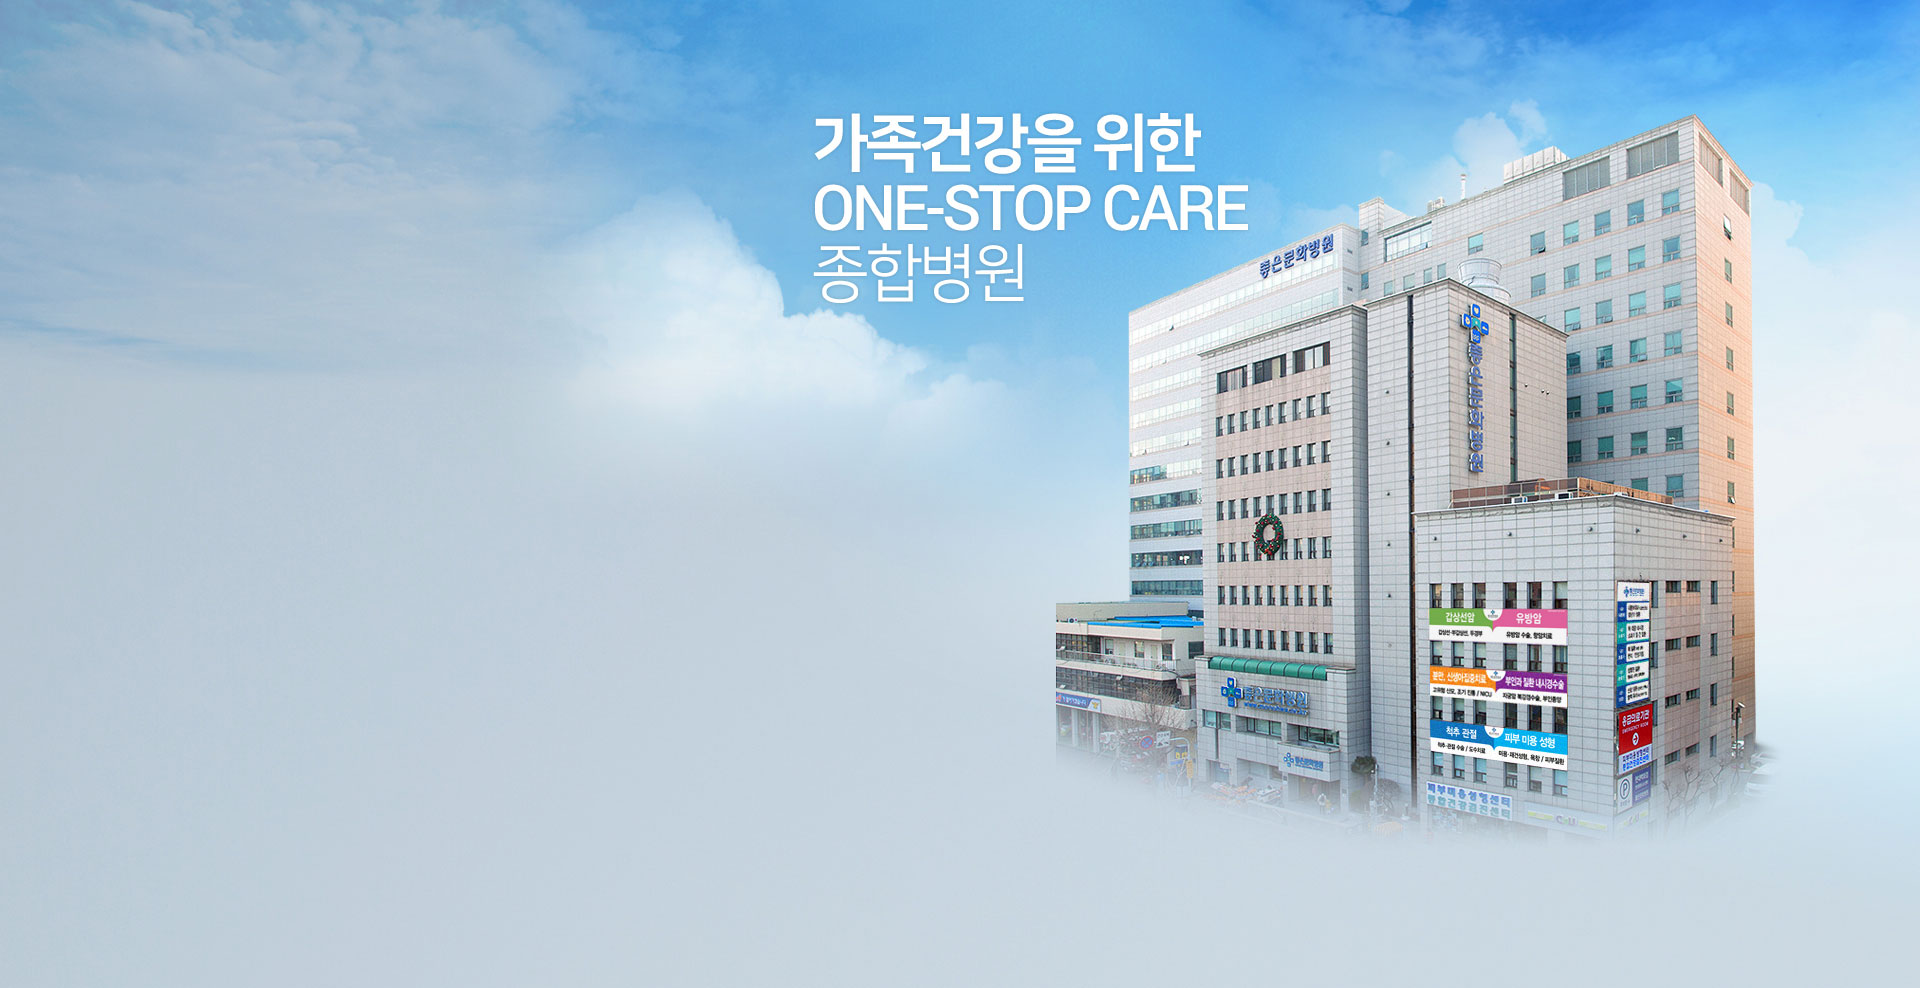 가족건강을 위한 one-stop care  종합병원.